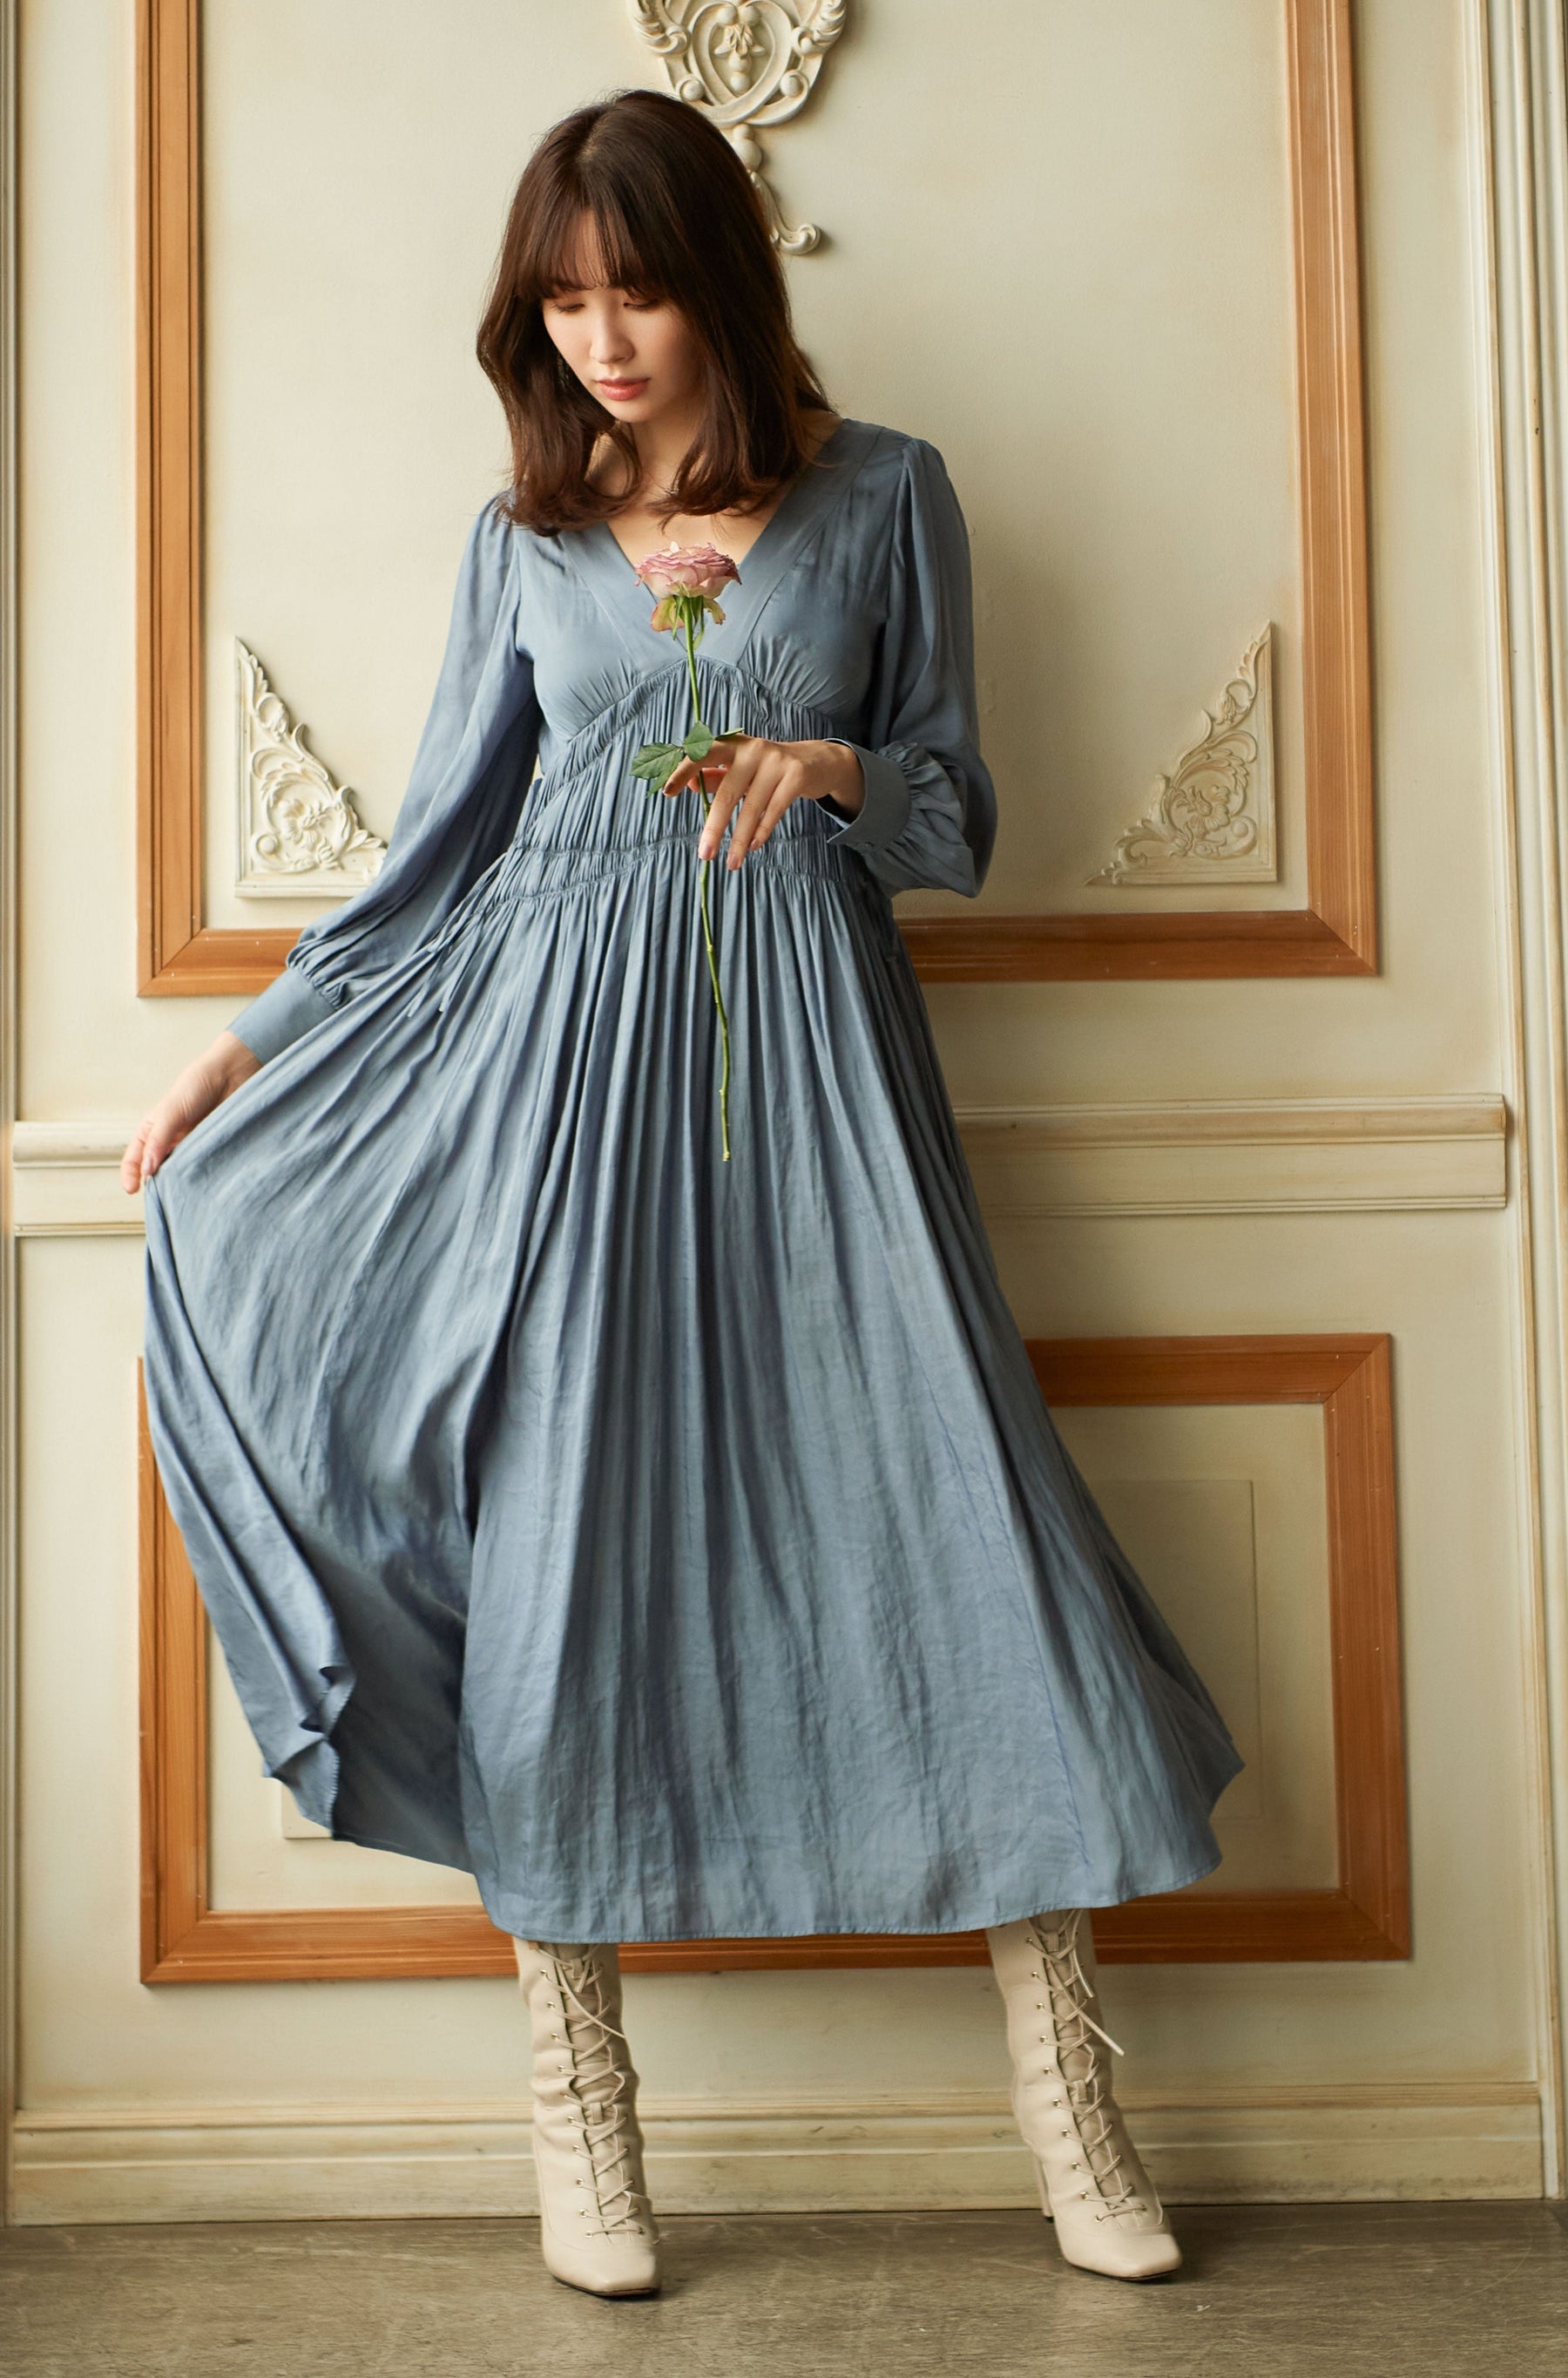 再×14入荷 Side Bow Vintage Twill Dress/lilac - 通販